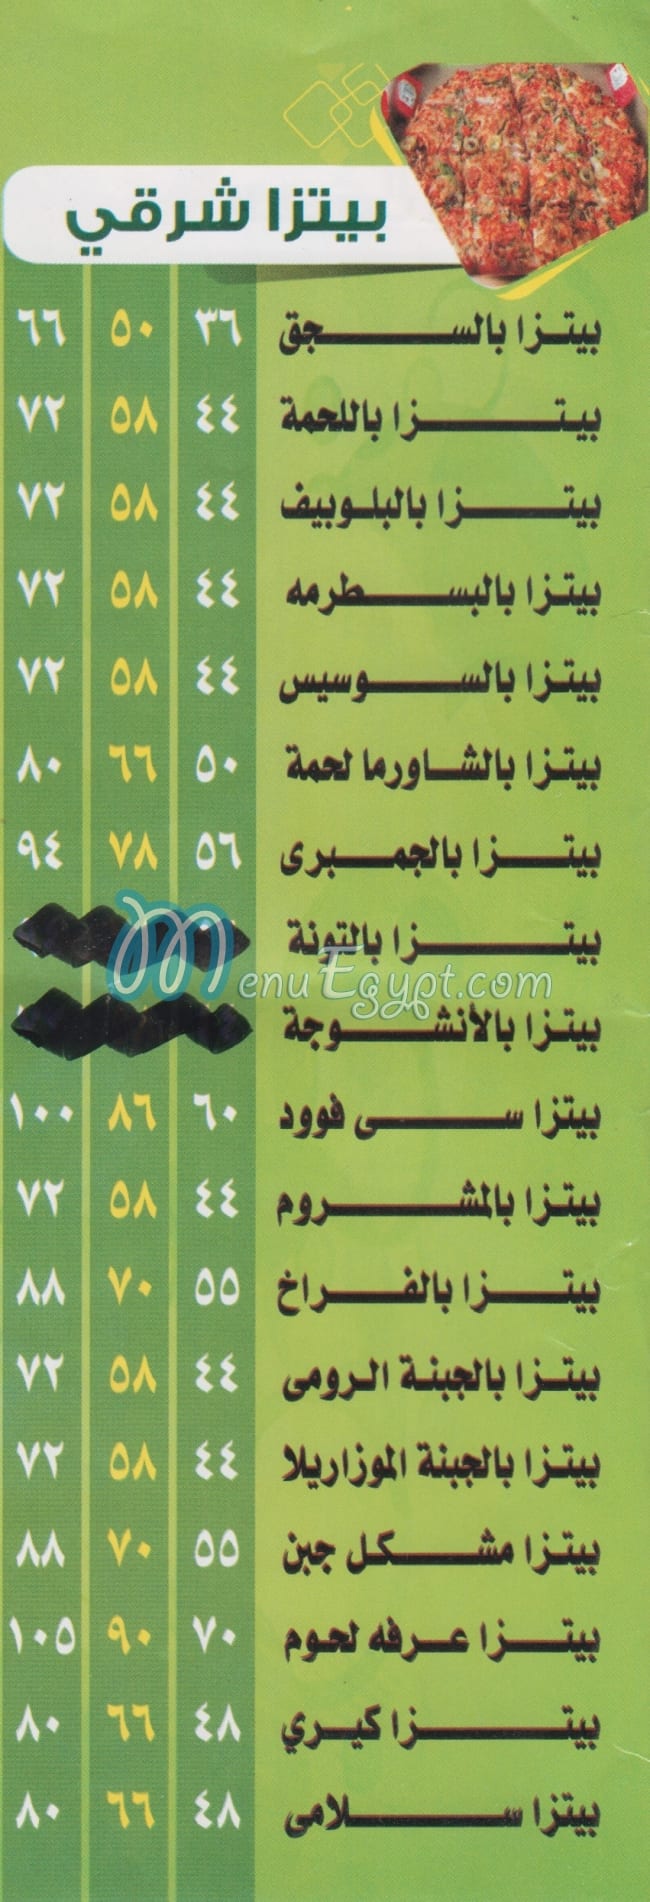 Arafa online menu